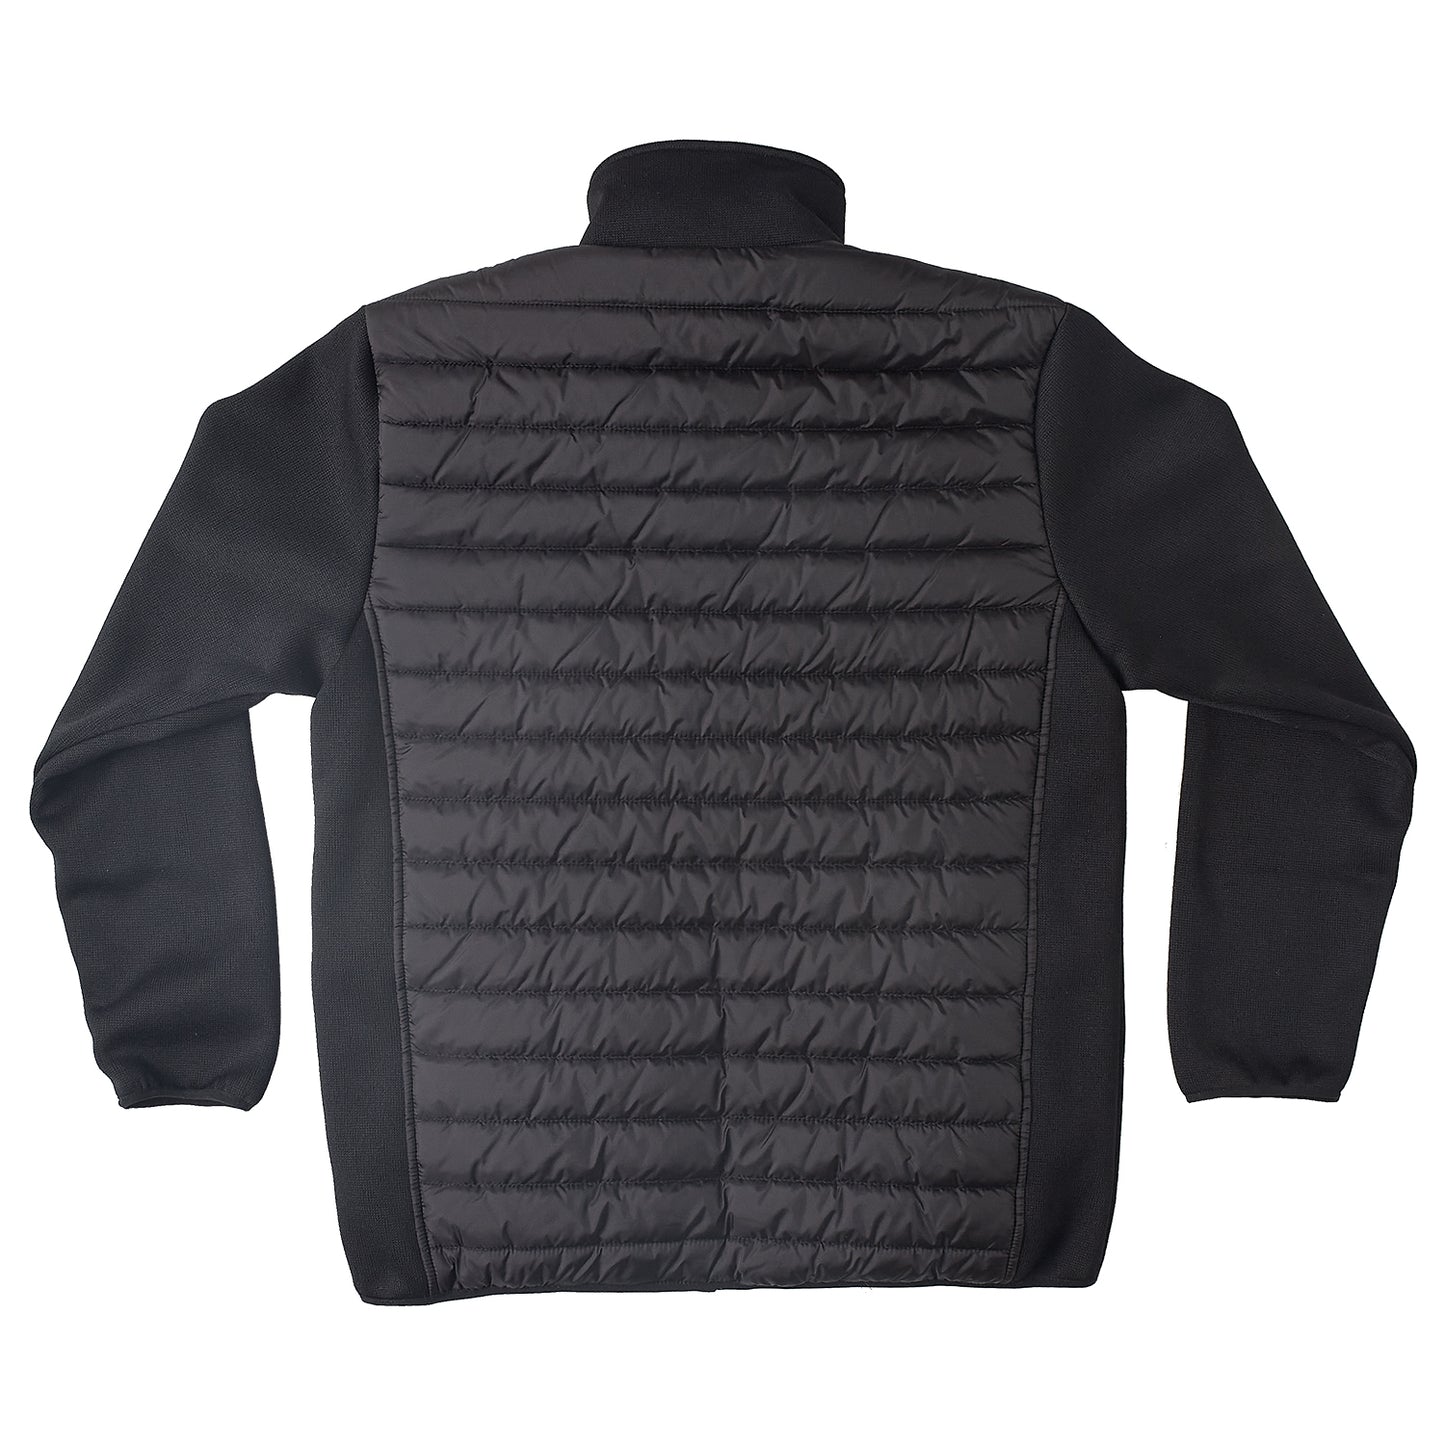 Brahma Vantage Corporate Padded Winter Jacket - Black - Back